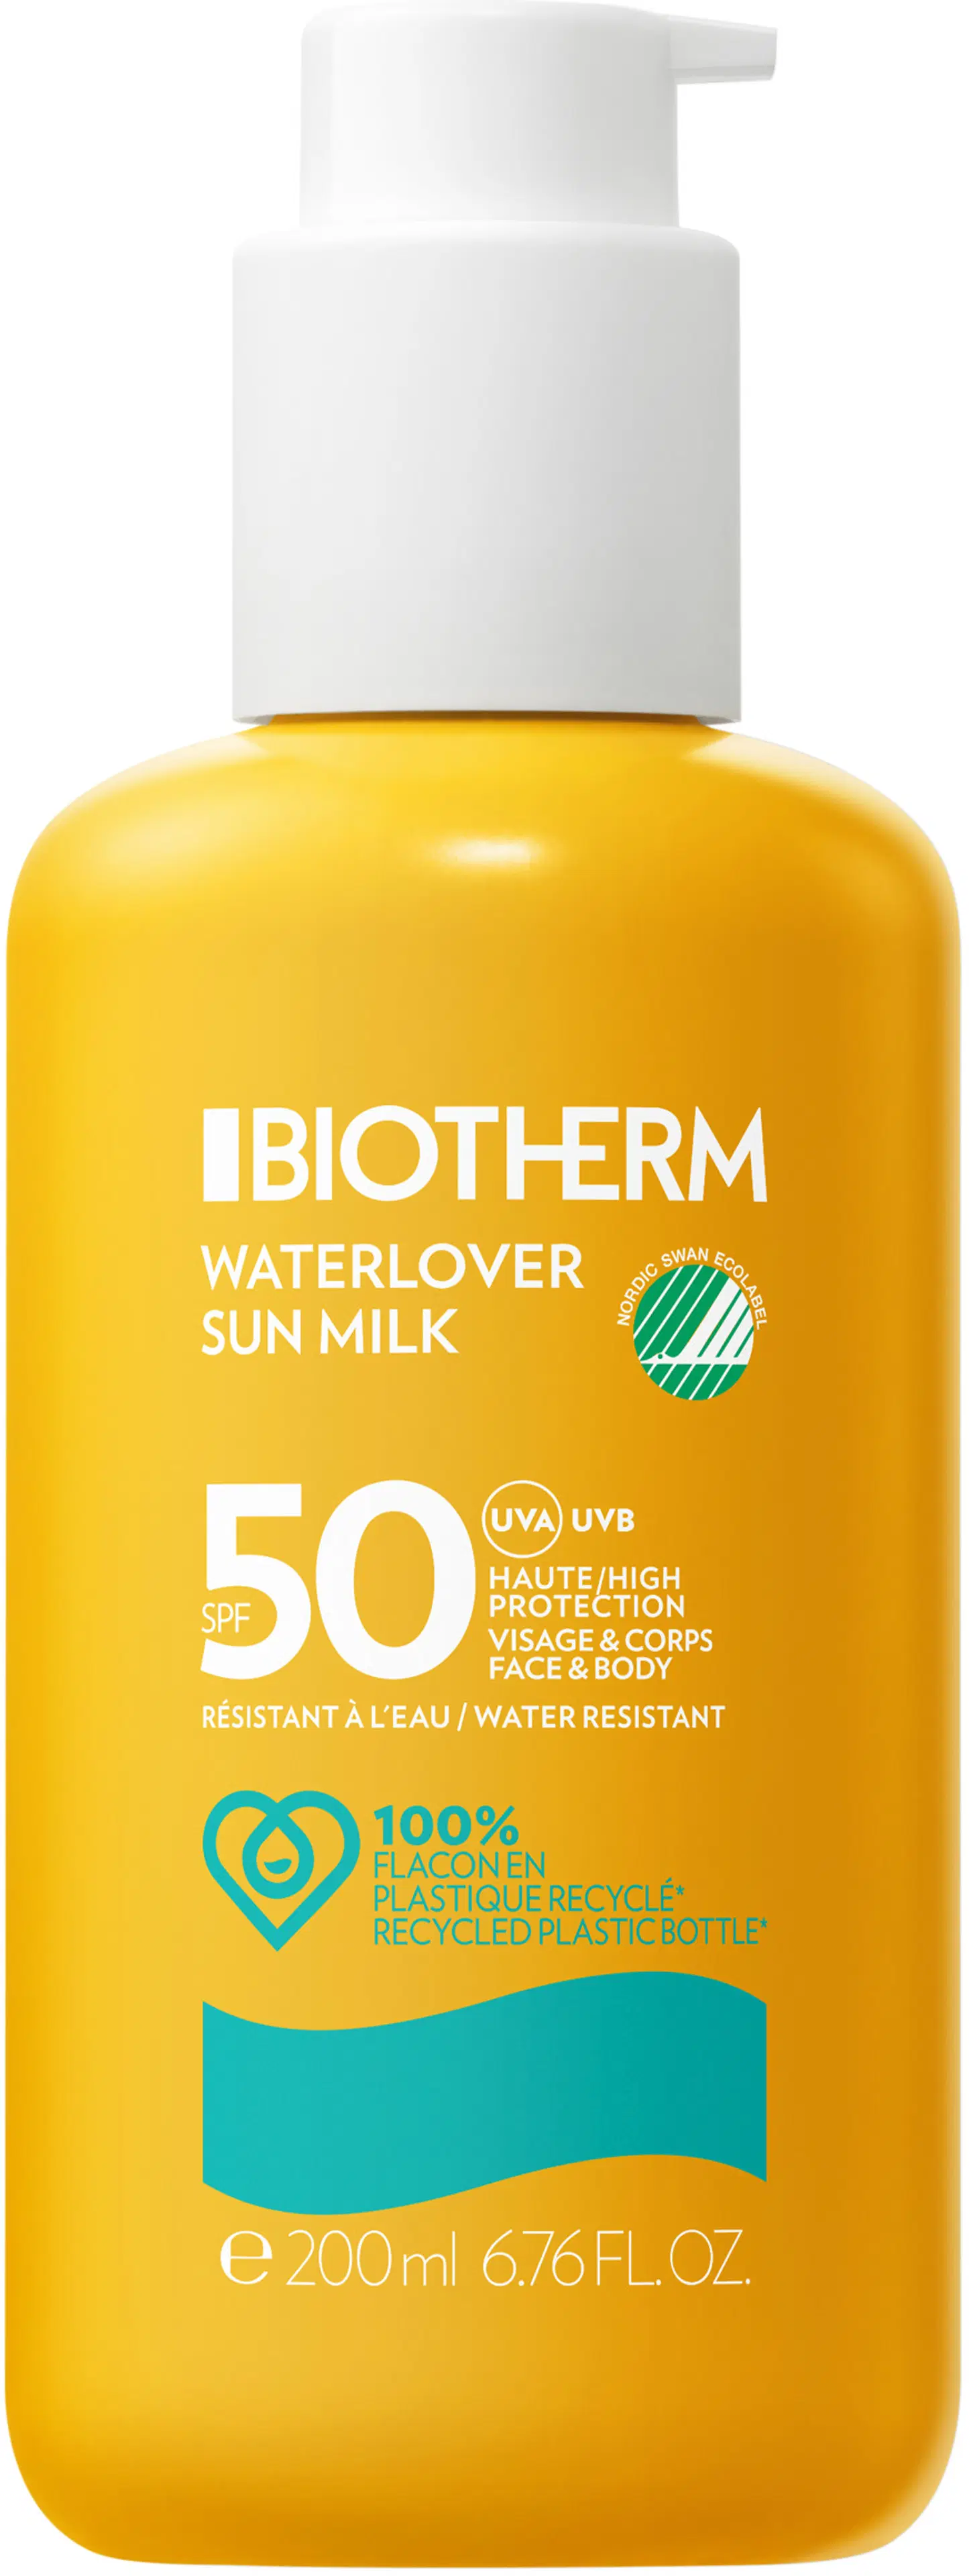 Biotherm Waterlover Sun Milk SPF50 aurinkovoide vartalolle ja kasvoille 200 ml